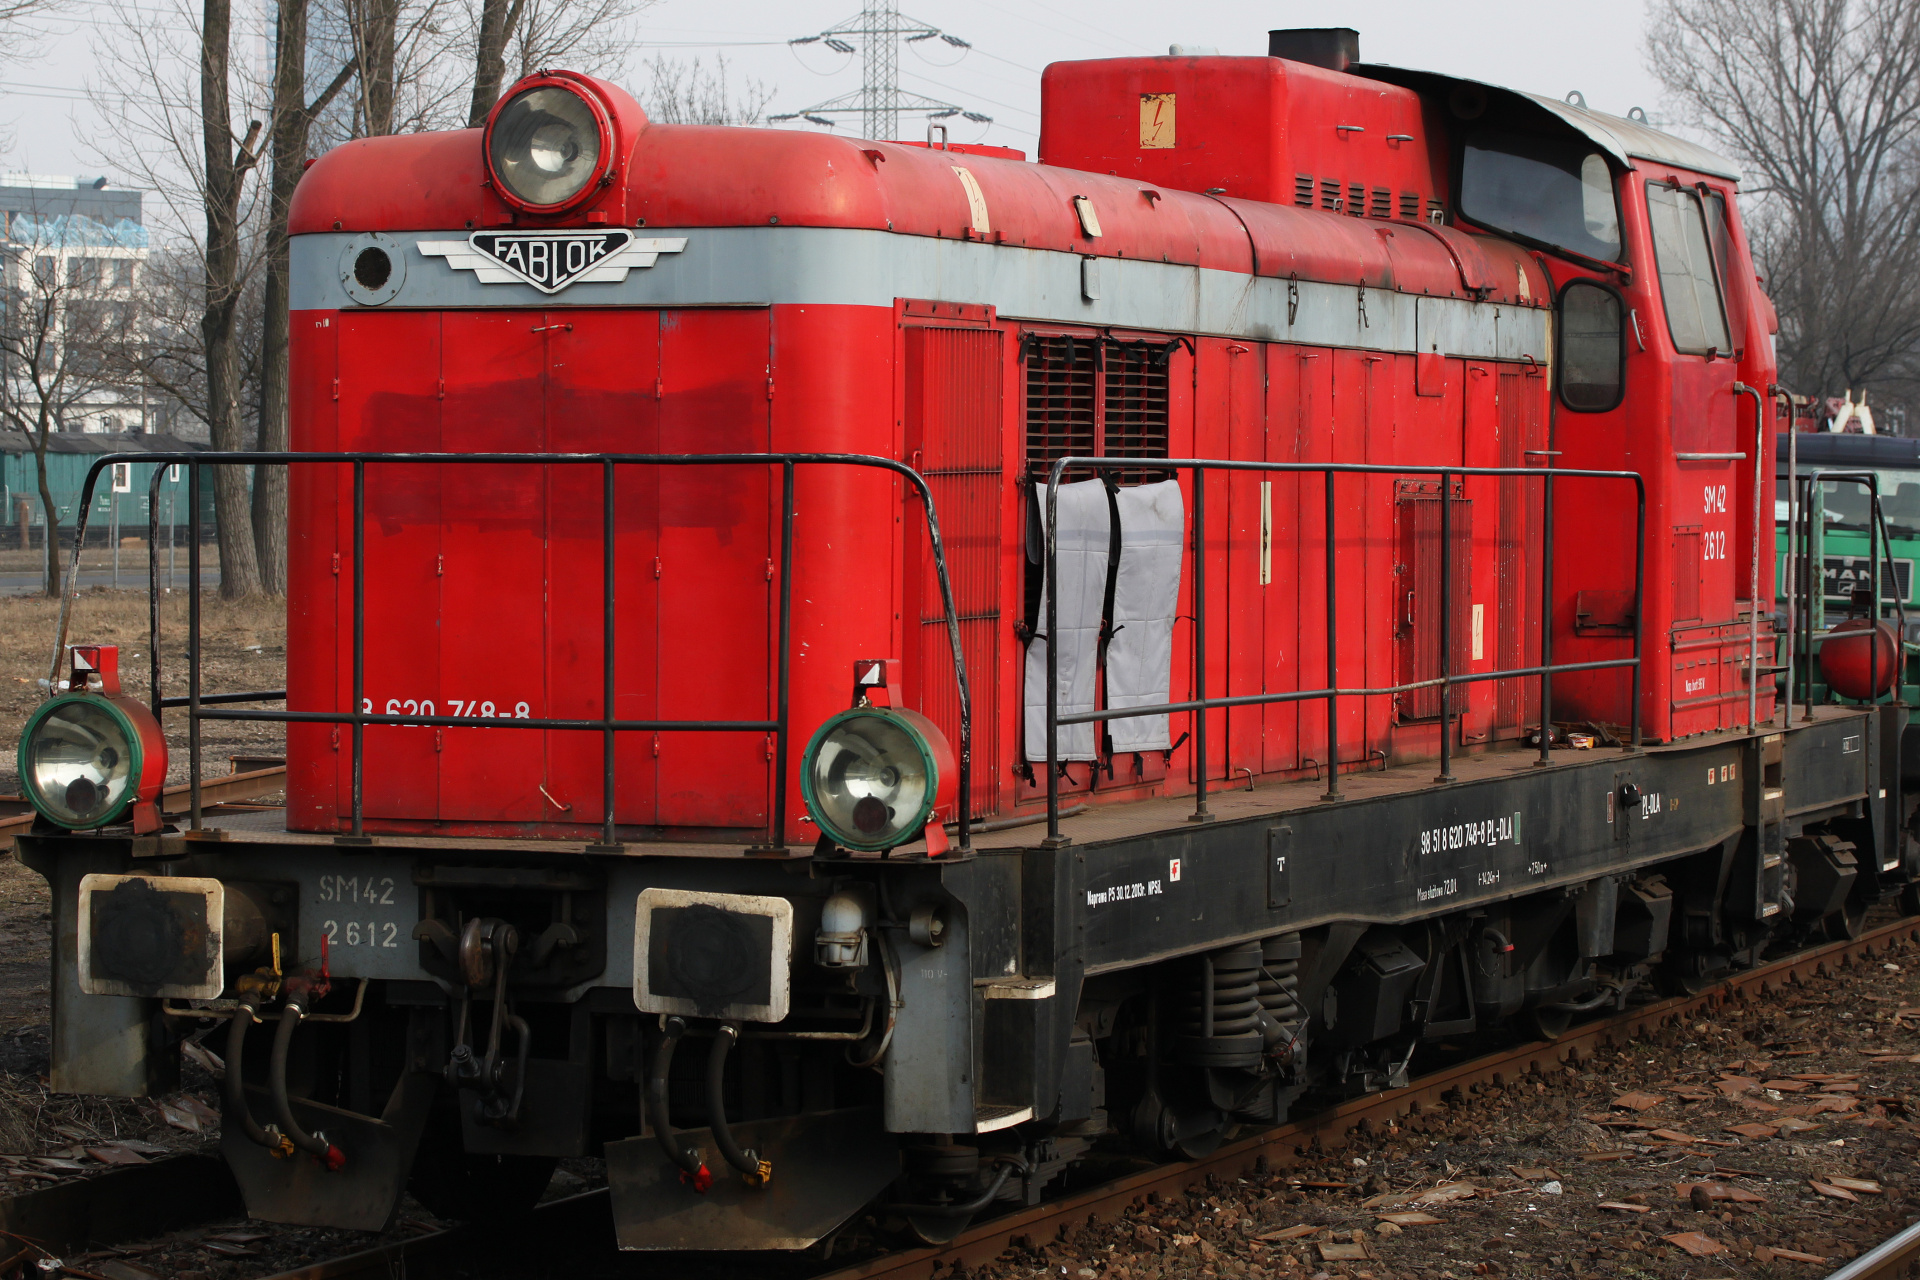 SM42-2612 (Pojazdy » Pociągi i lokomotywy » Fablok 6D)